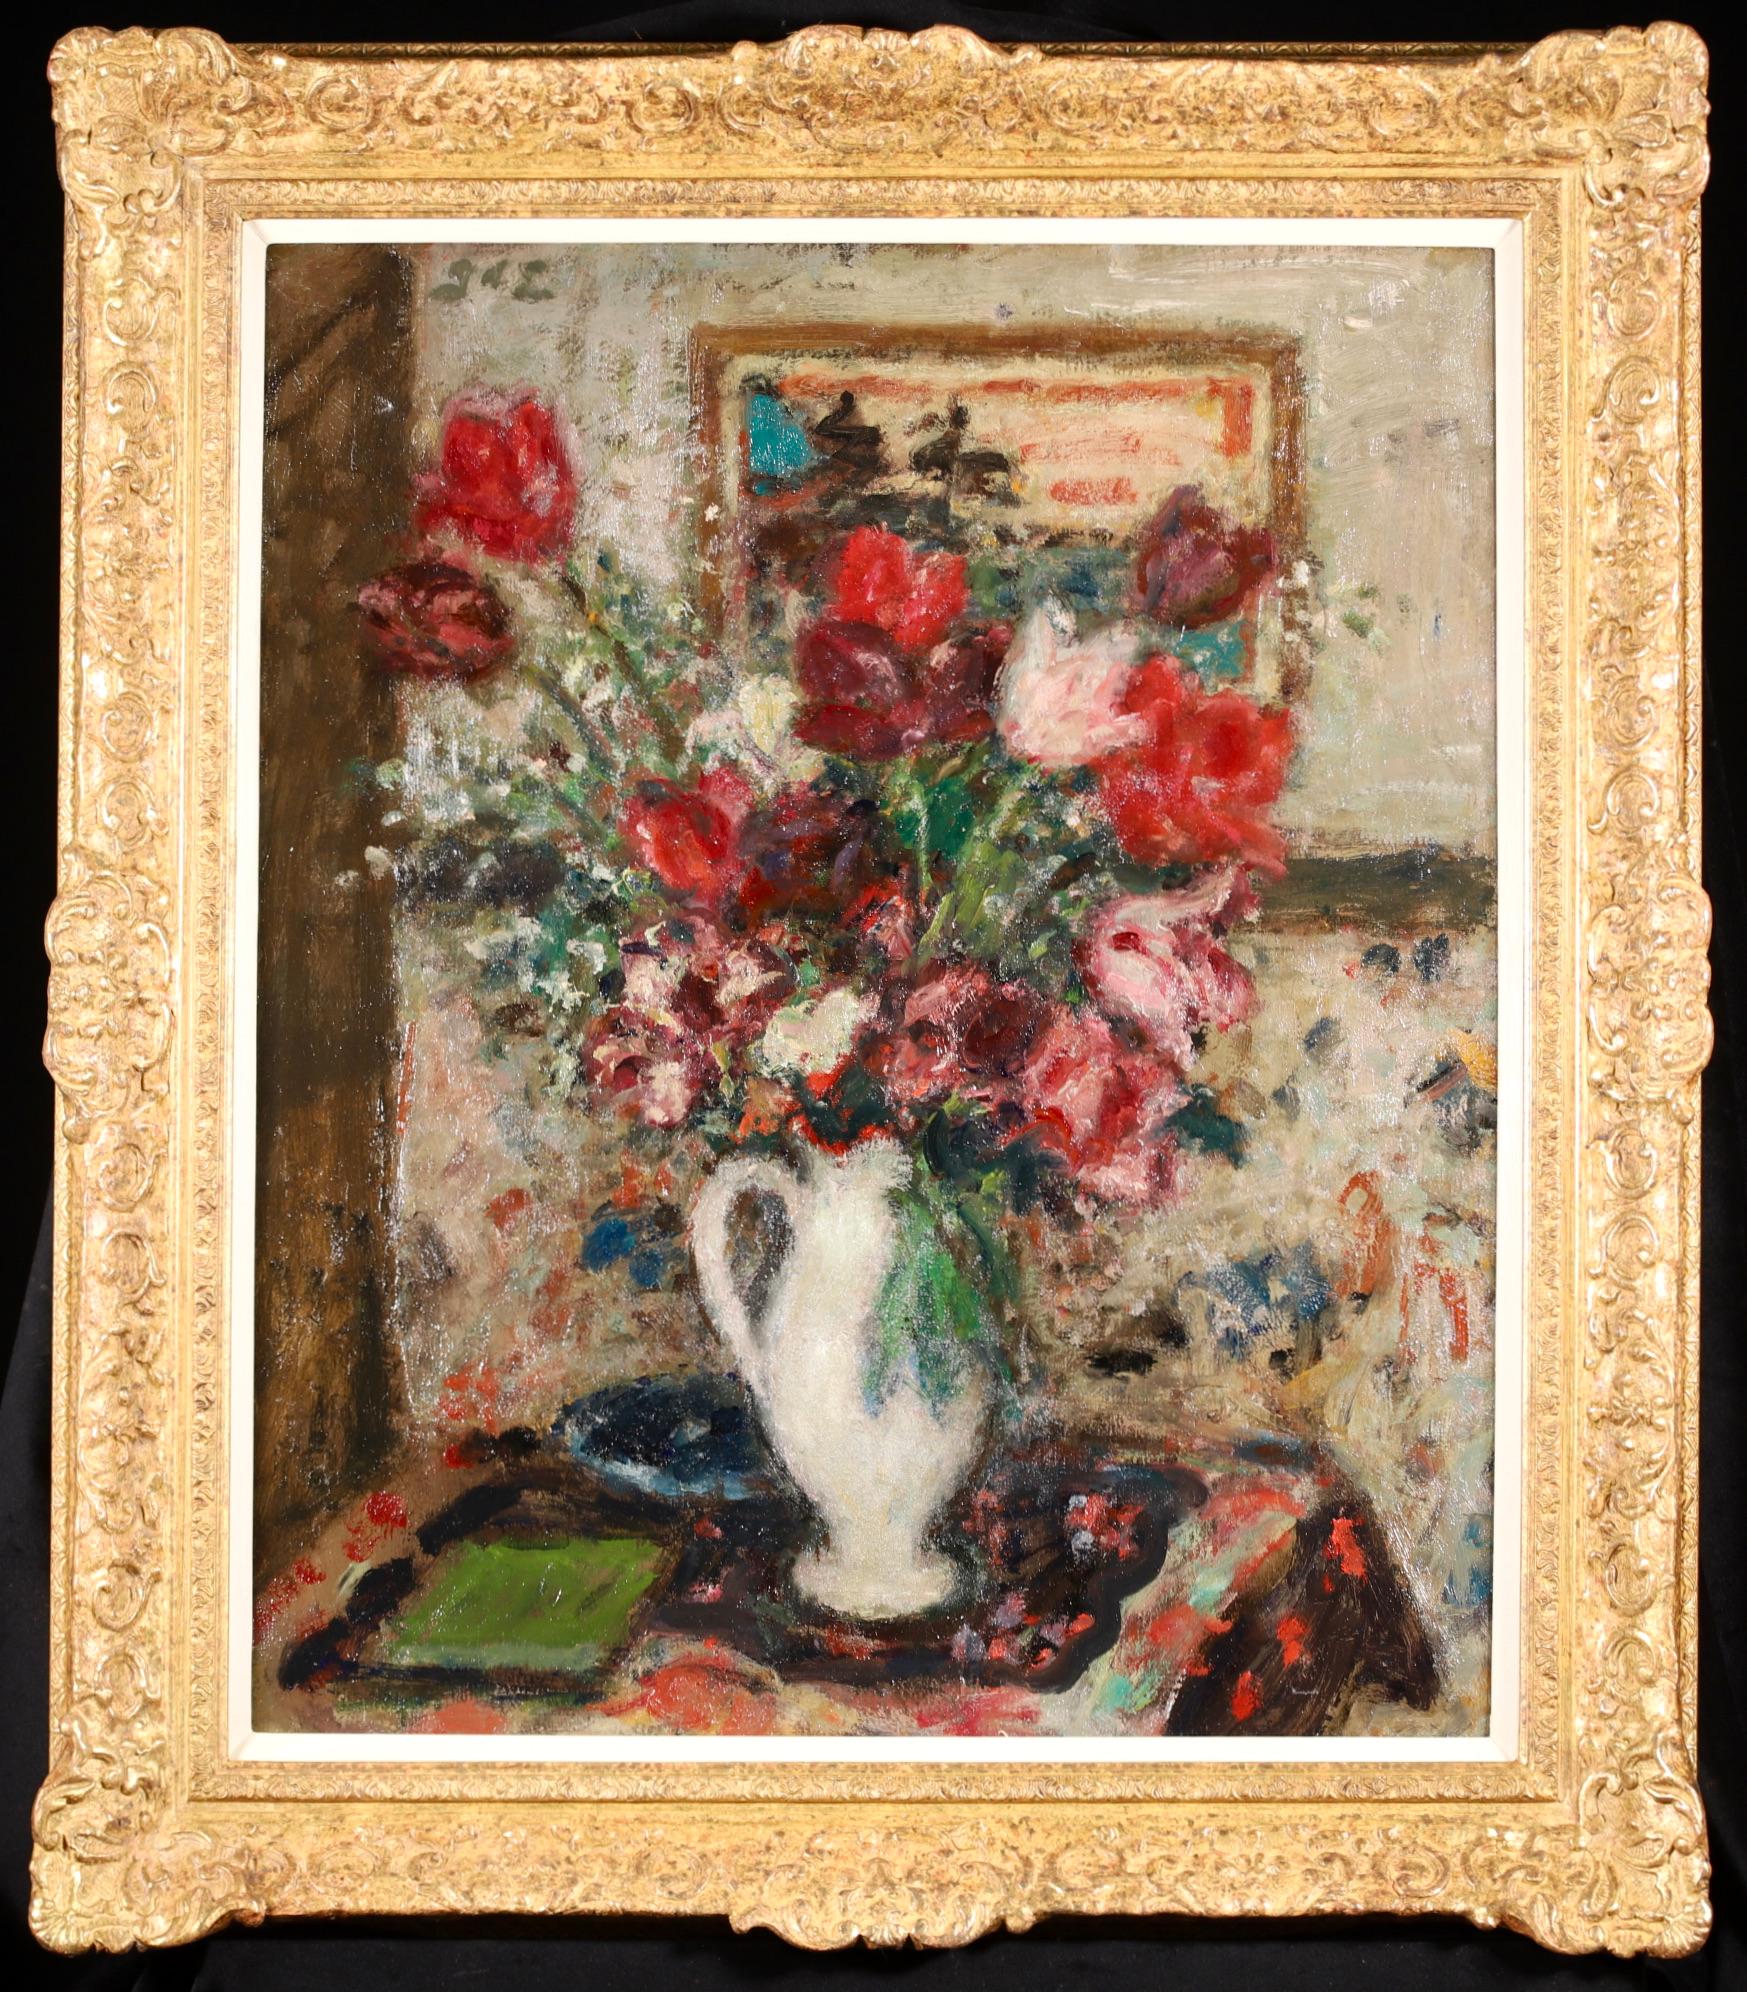 Signiertes Stillleben in Öl auf Leinwand um 1920 von dem französischen postimpressionistischen Maler Georges D'Espagnat. Das Werk zeigt eine weiße Vase, die mit roten und weißen Tulpen gefüllt ist. Ein schönes Stück in der unverwechselbaren Hand des